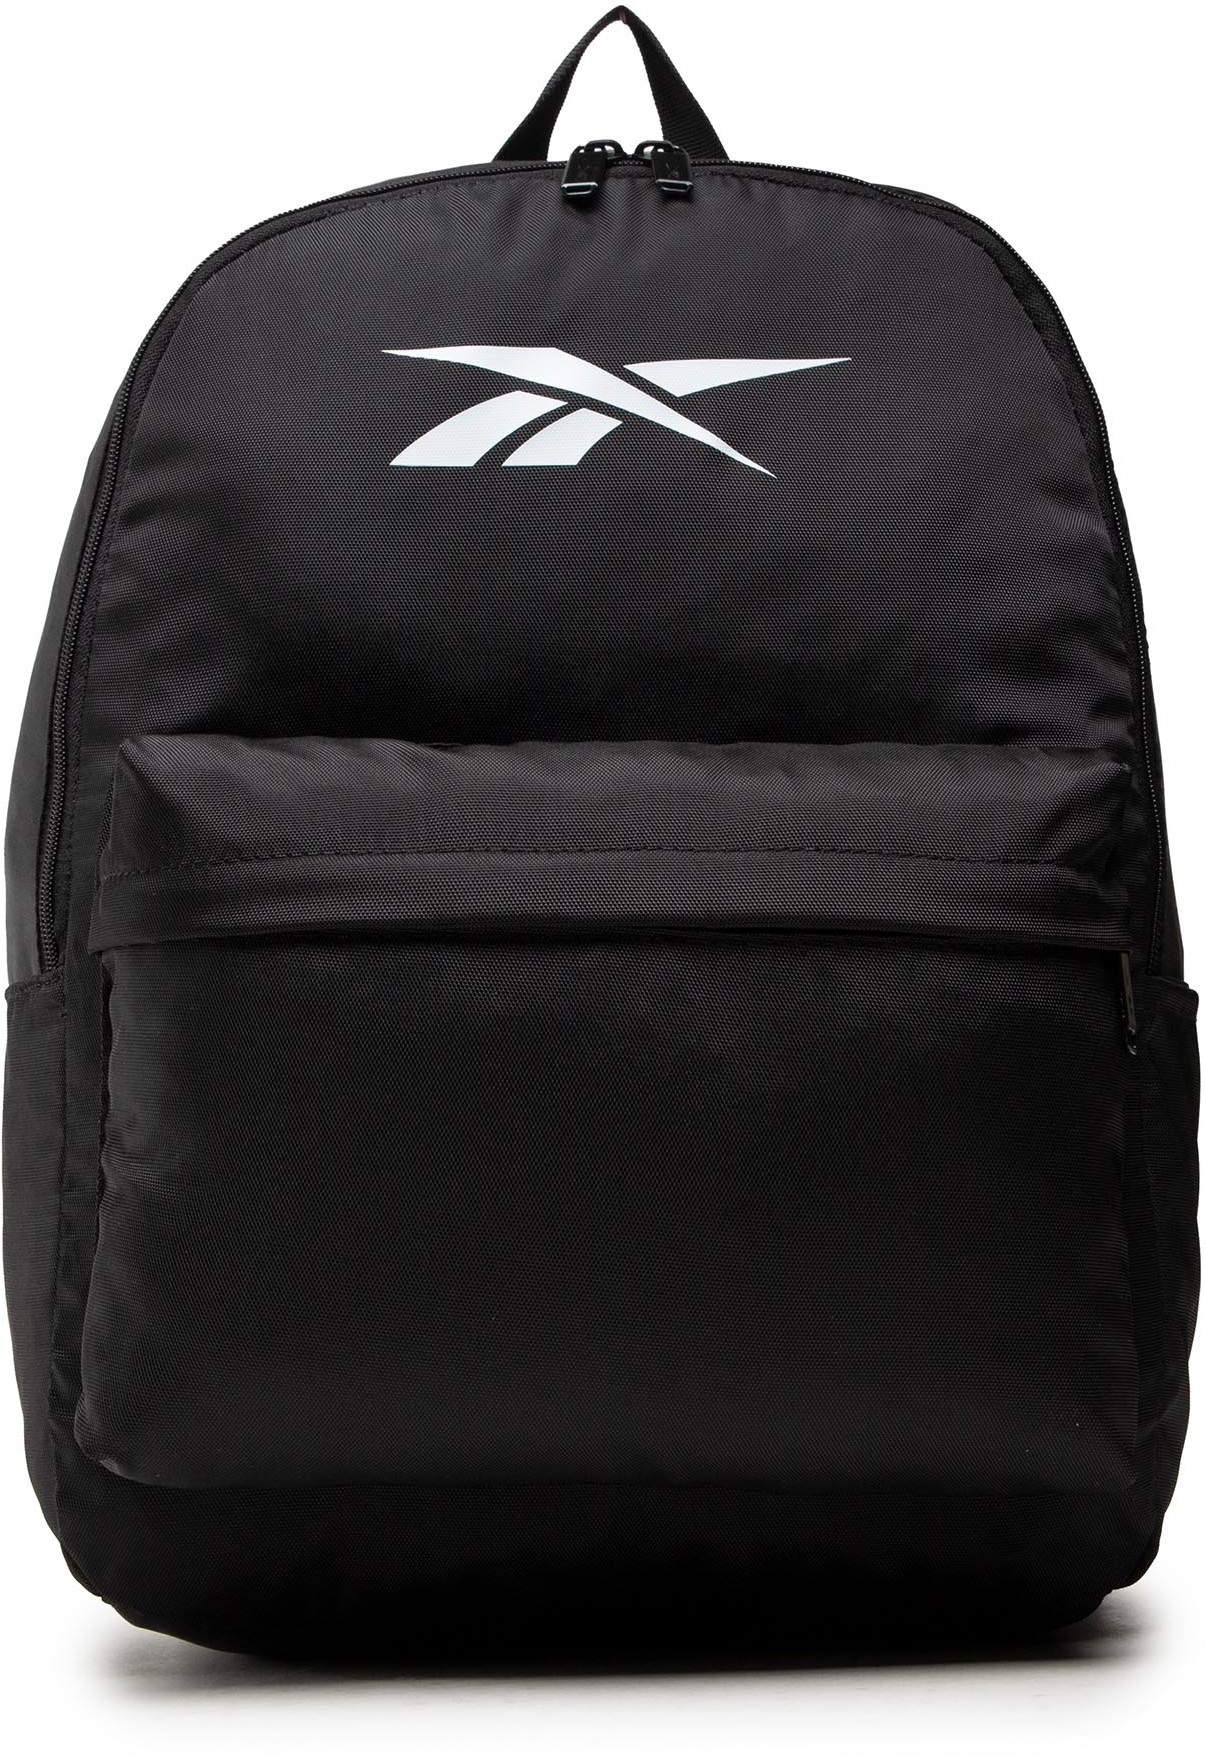 Reebok Plecak Myt Backpack H36583 Black